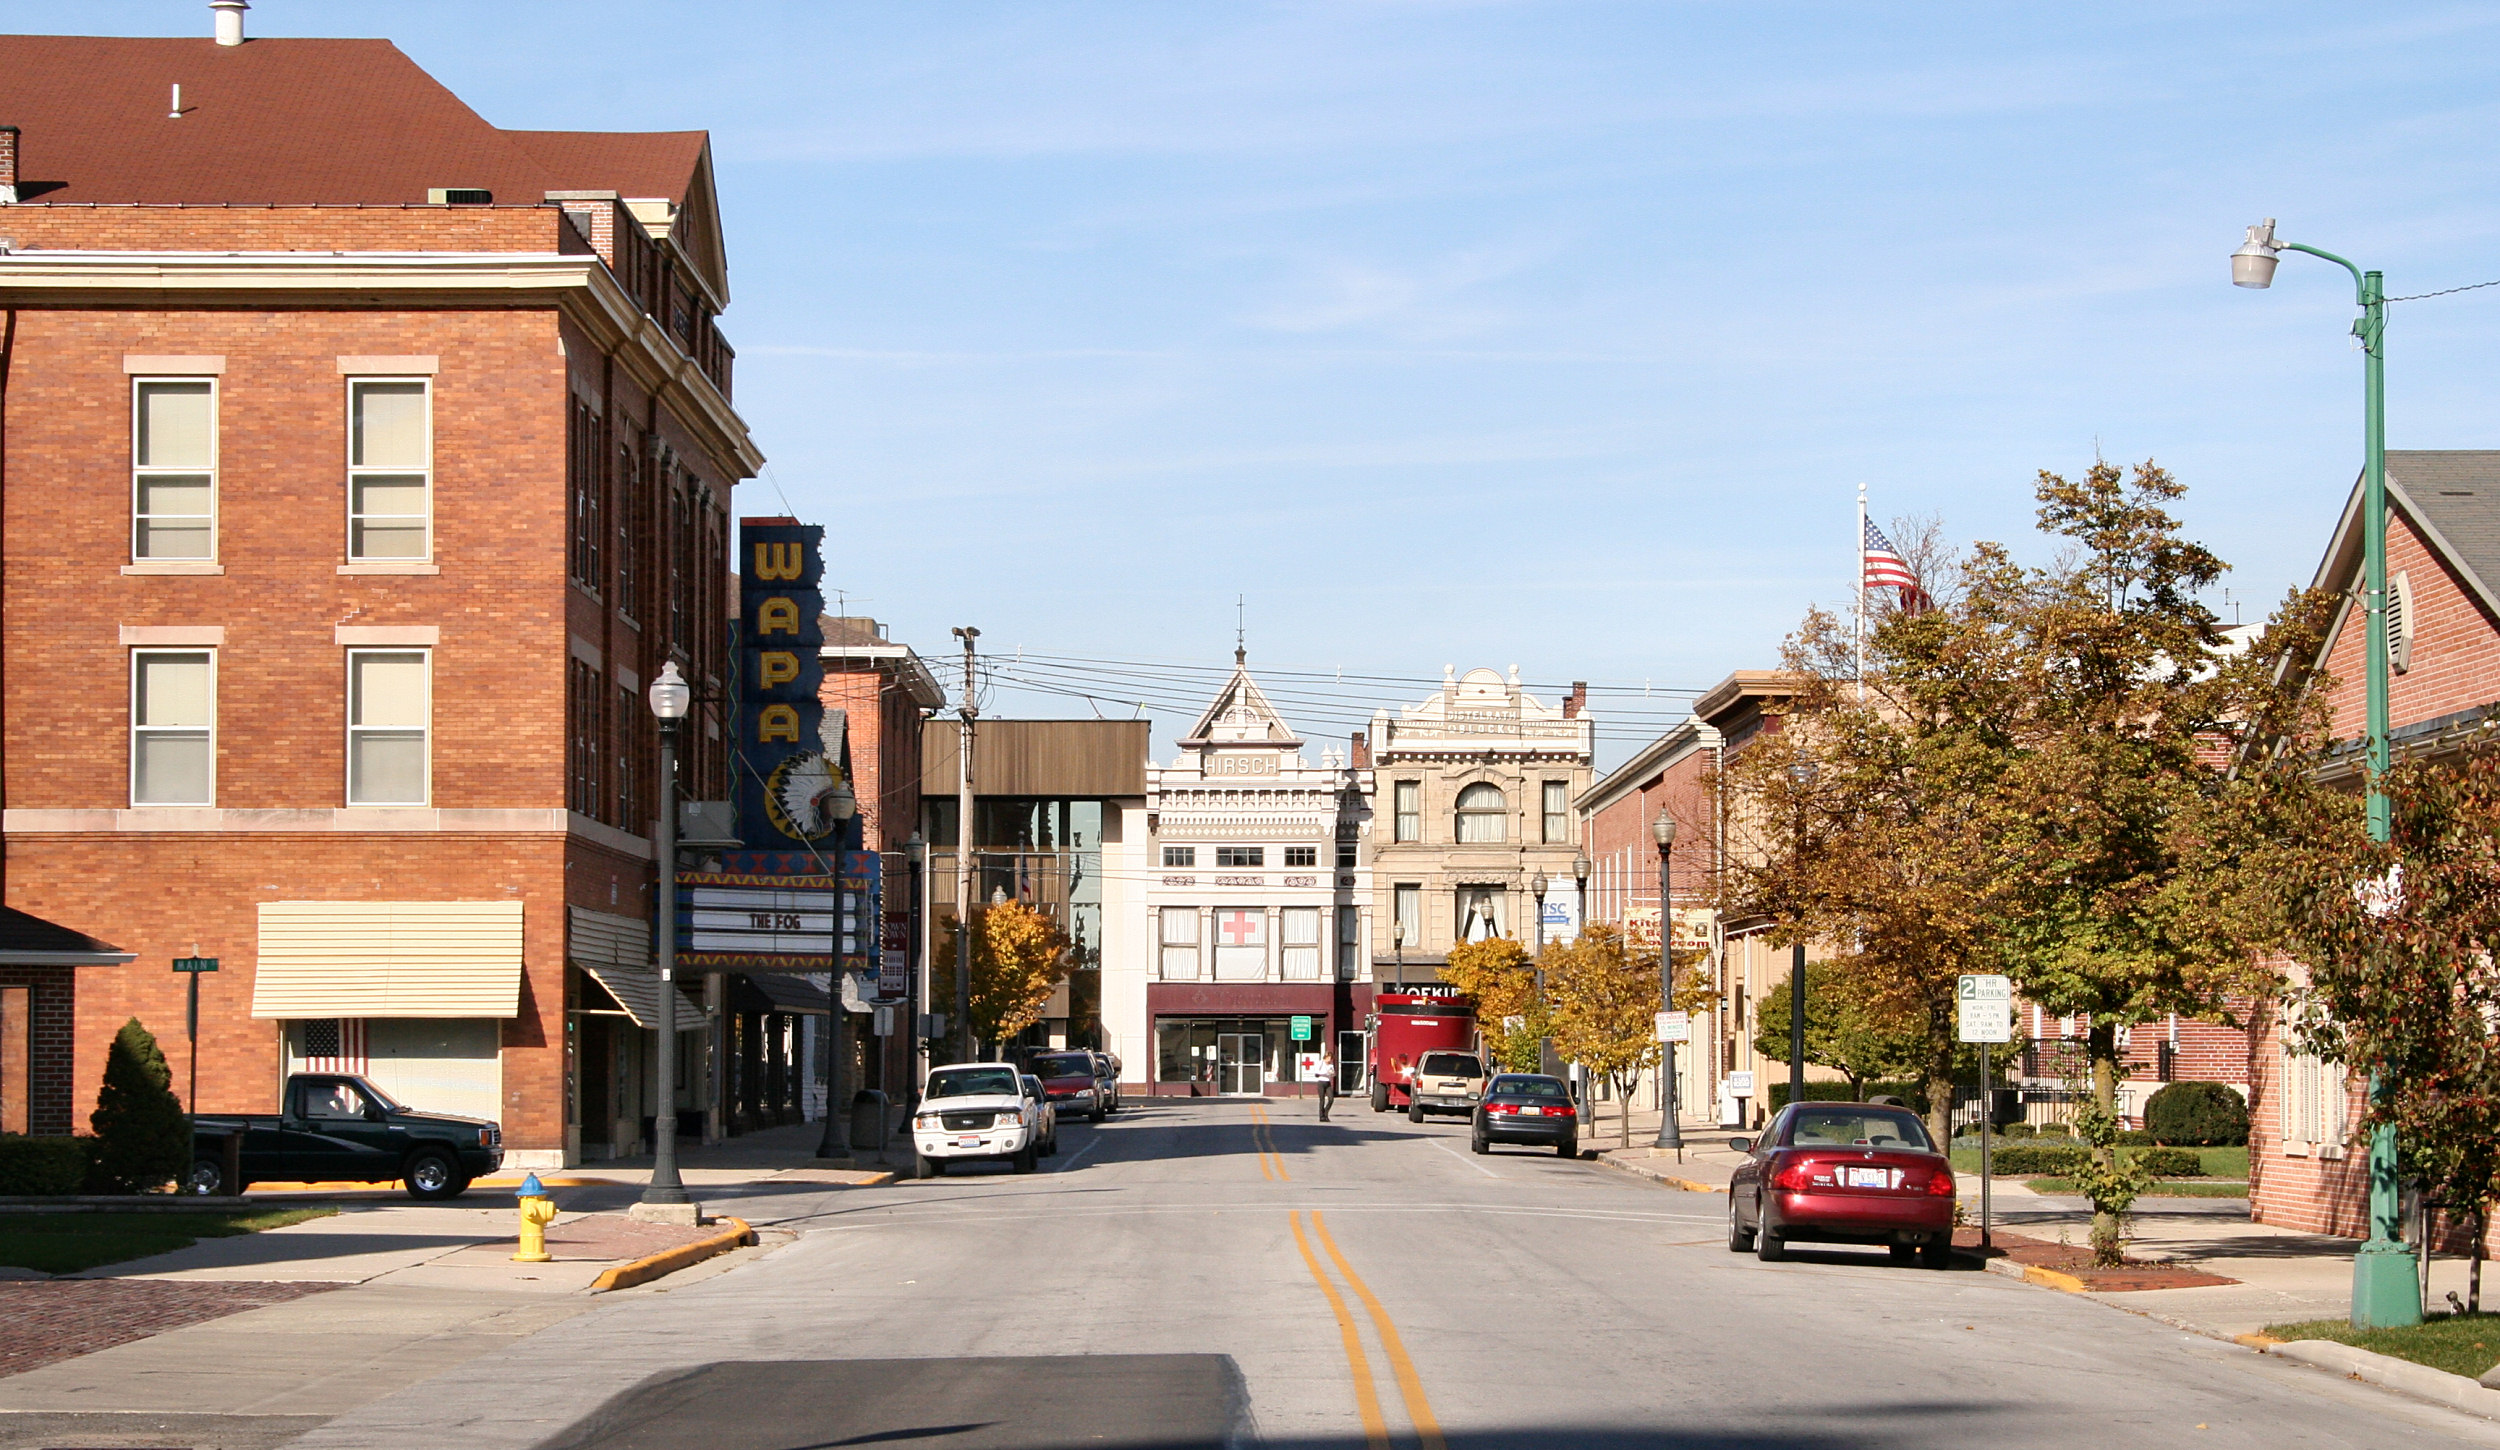 Wapakoneta, Ohio - A Town With A Rich 